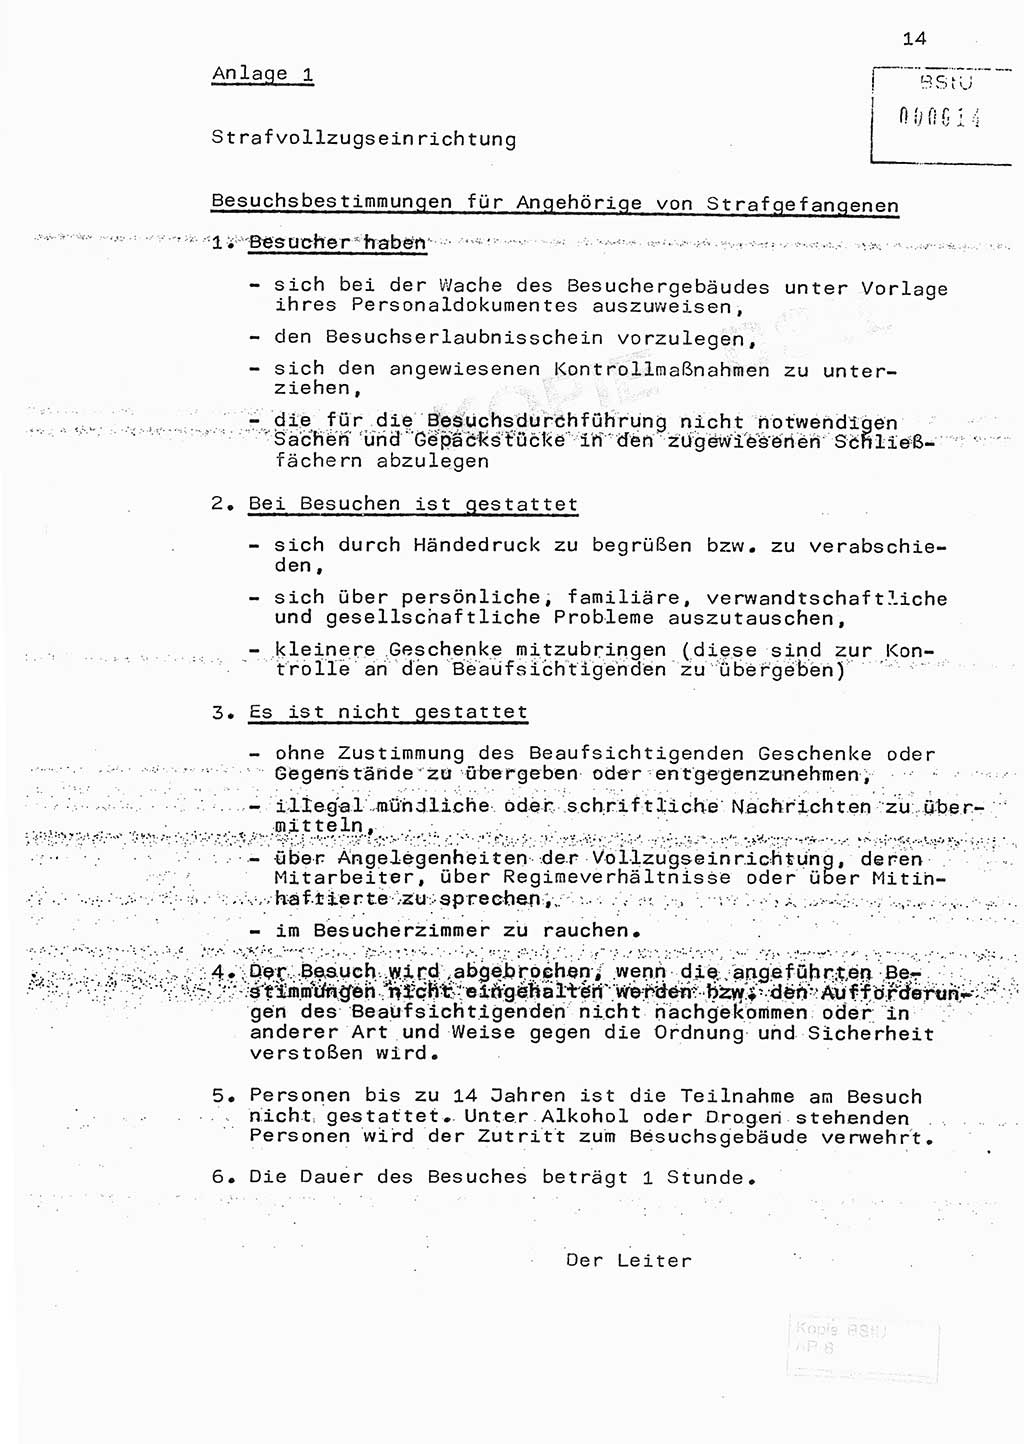 Fachschulabschlußarbeit Hauptmann Edwin Buhse (Abt. ⅩⅣ), Ministerium für Staatssicherheit (MfS) [Deutsche Demokratische Republik (DDR)], Abteilung ⅩⅣ, o.D., o.O, o.J., ca. 1986 wg. Bez. DA 2/86, Seite 14 (FS-Abschl.-Arb. MfS DDR Abt. ⅩⅣ 1986, S. 14)